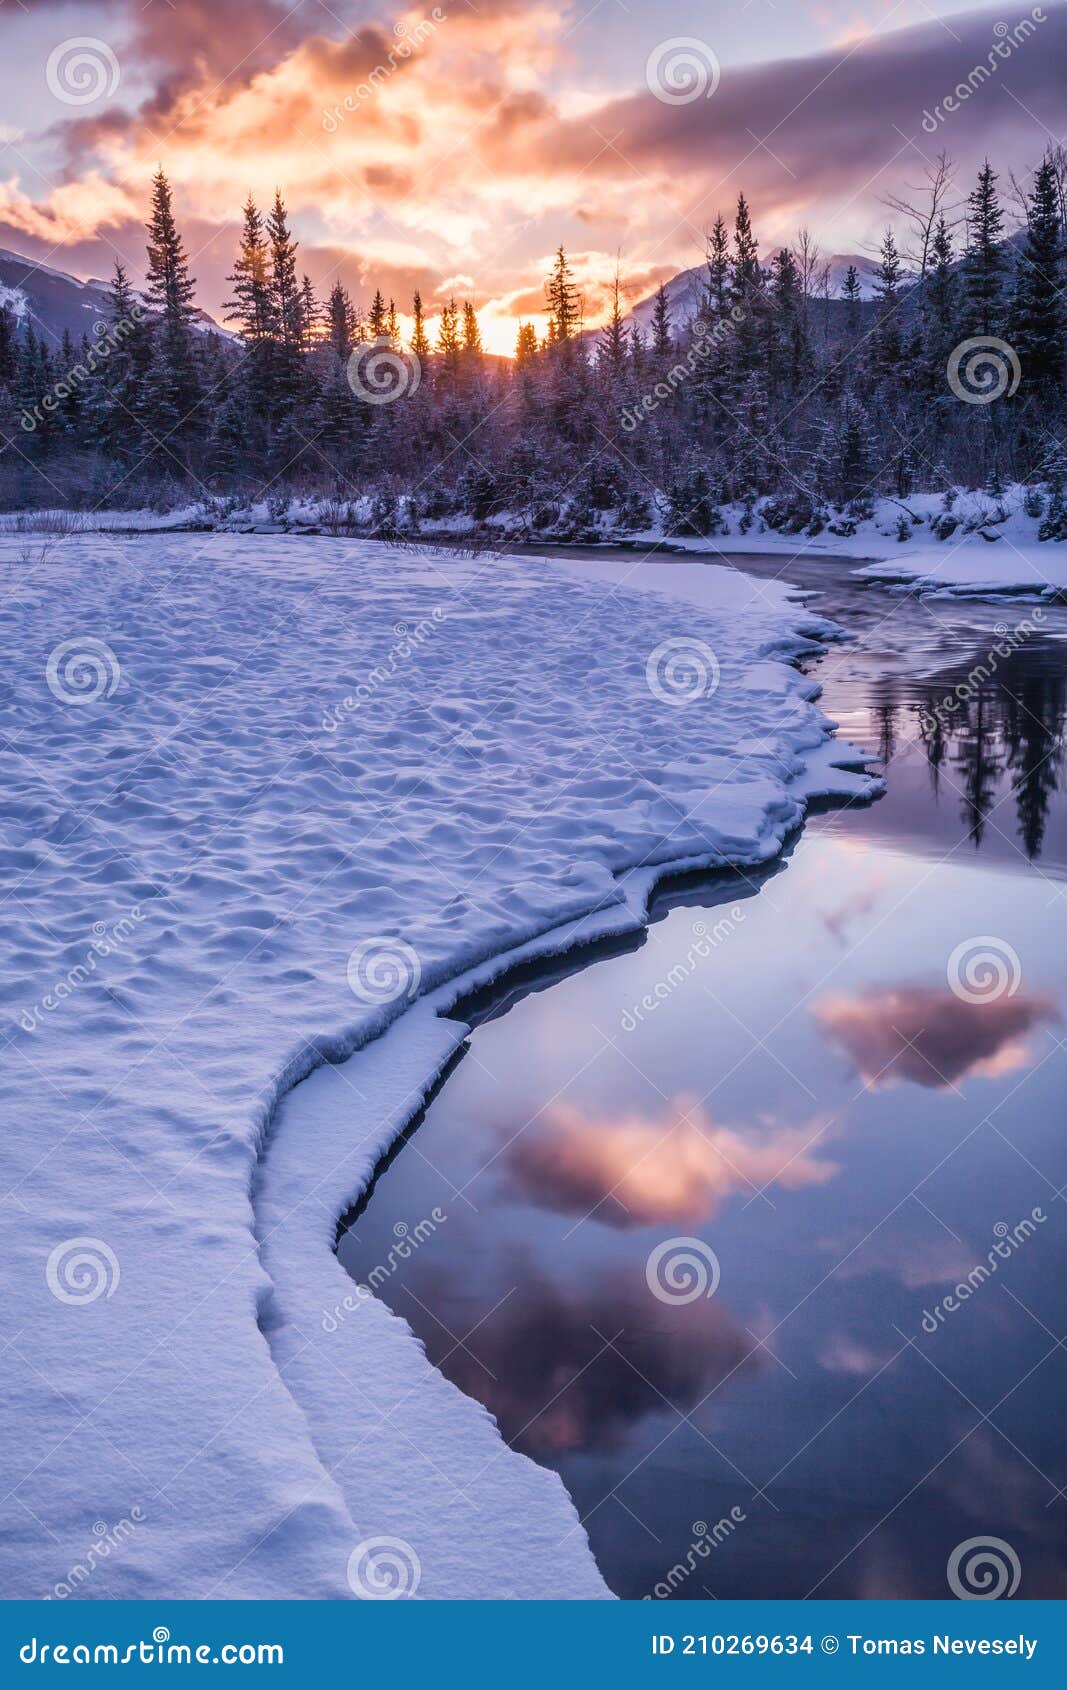 Раннее утро на крик около canmore Провинции альберта (Канада). Раннее утро на крик около canmore Альберты Канады на холодном зимнее время.